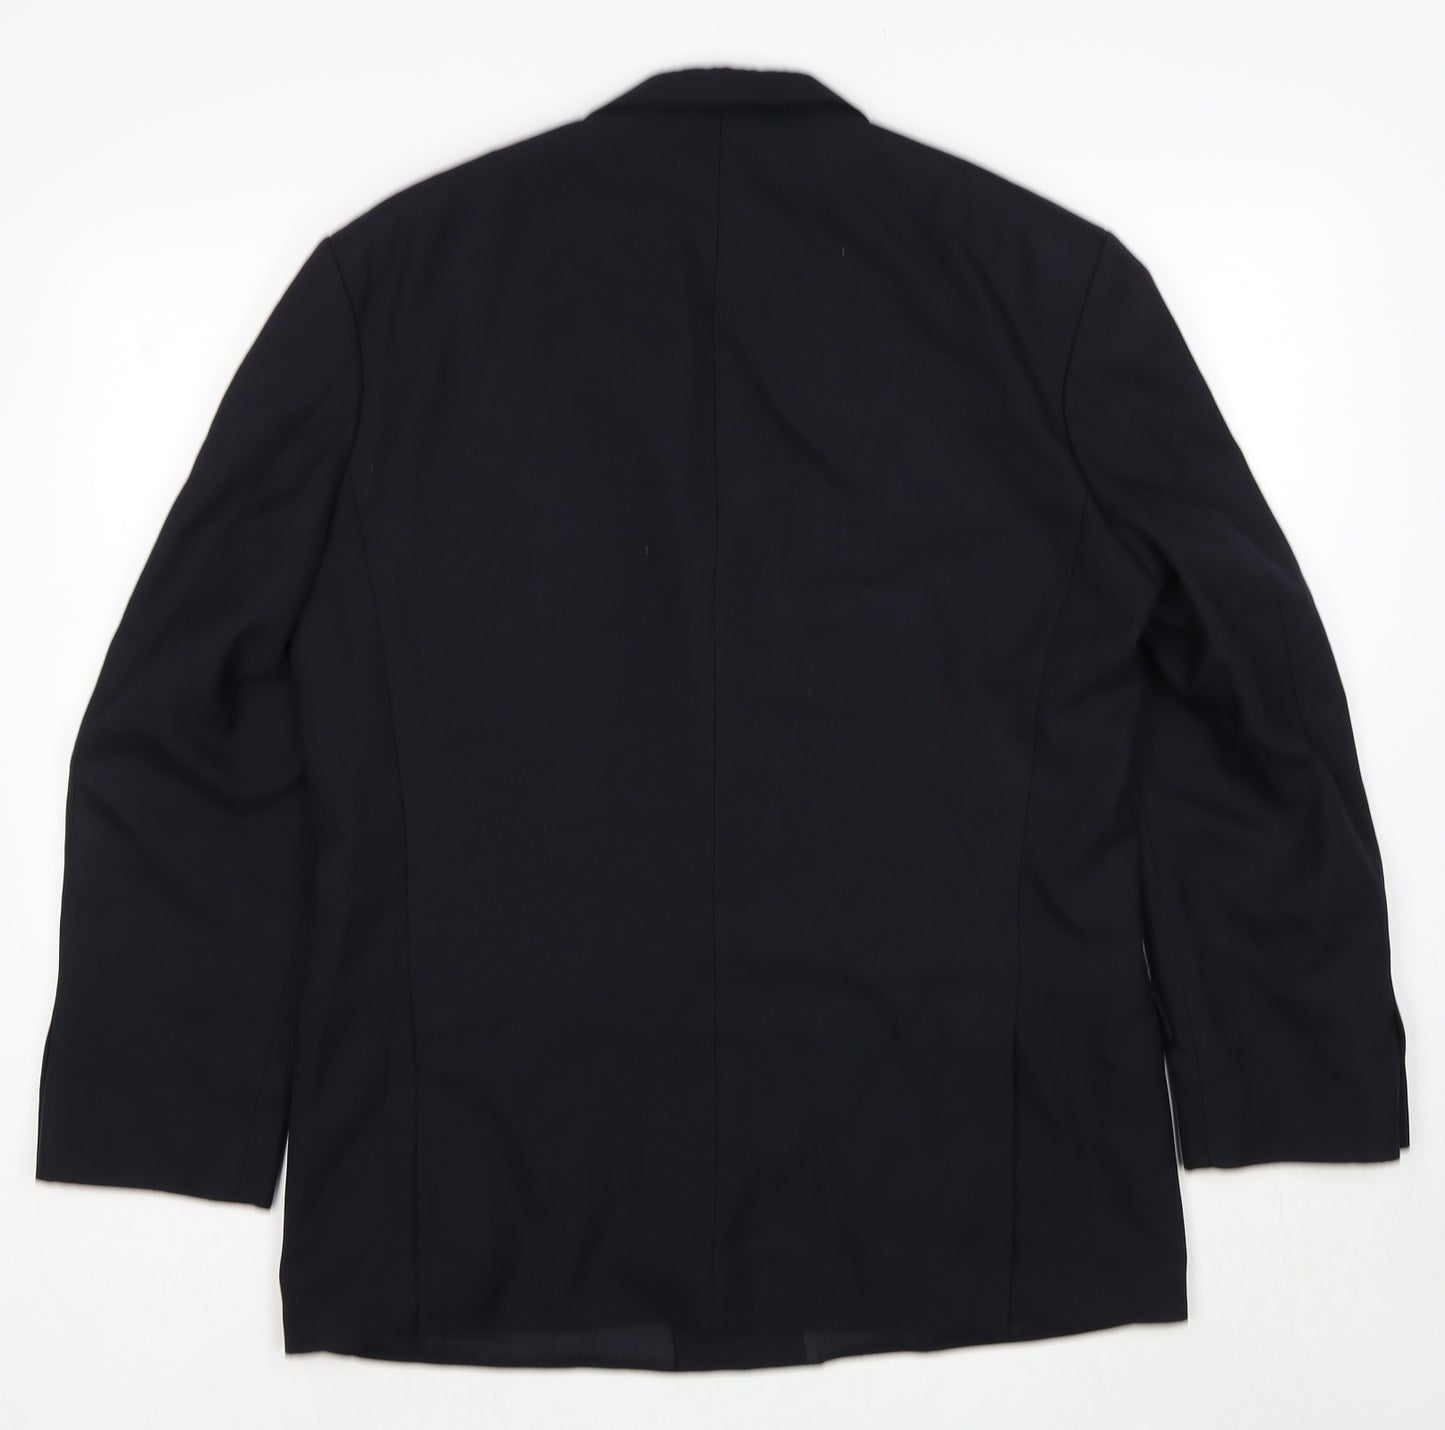 Marks and Spencer Mens Black Polyester Jacket Suit Jacket Size M Regular